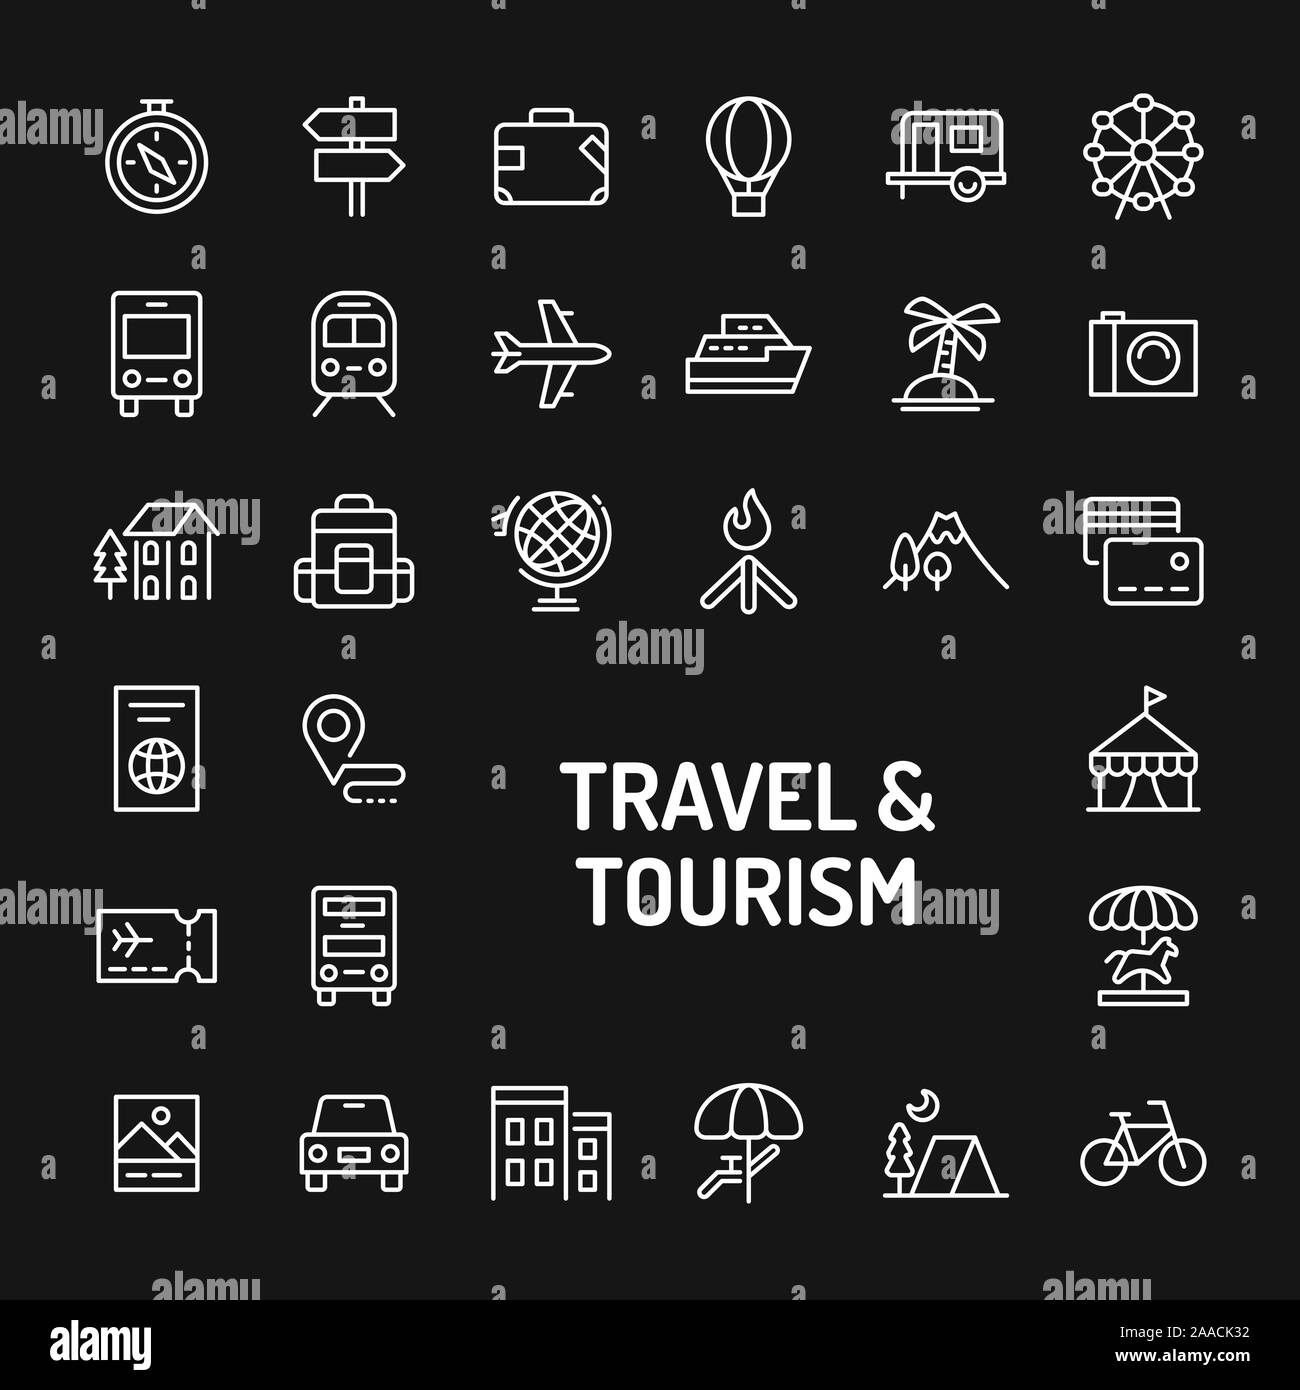 Einfache weiße Zeile für Symbole auf schwarzem Hintergrund im Zusammenhang mit Reisen, Tourismus, Ferien und Freizeit isoliert. Vektor Zeichen und Symbole Sammlungen für w Stock Vektor